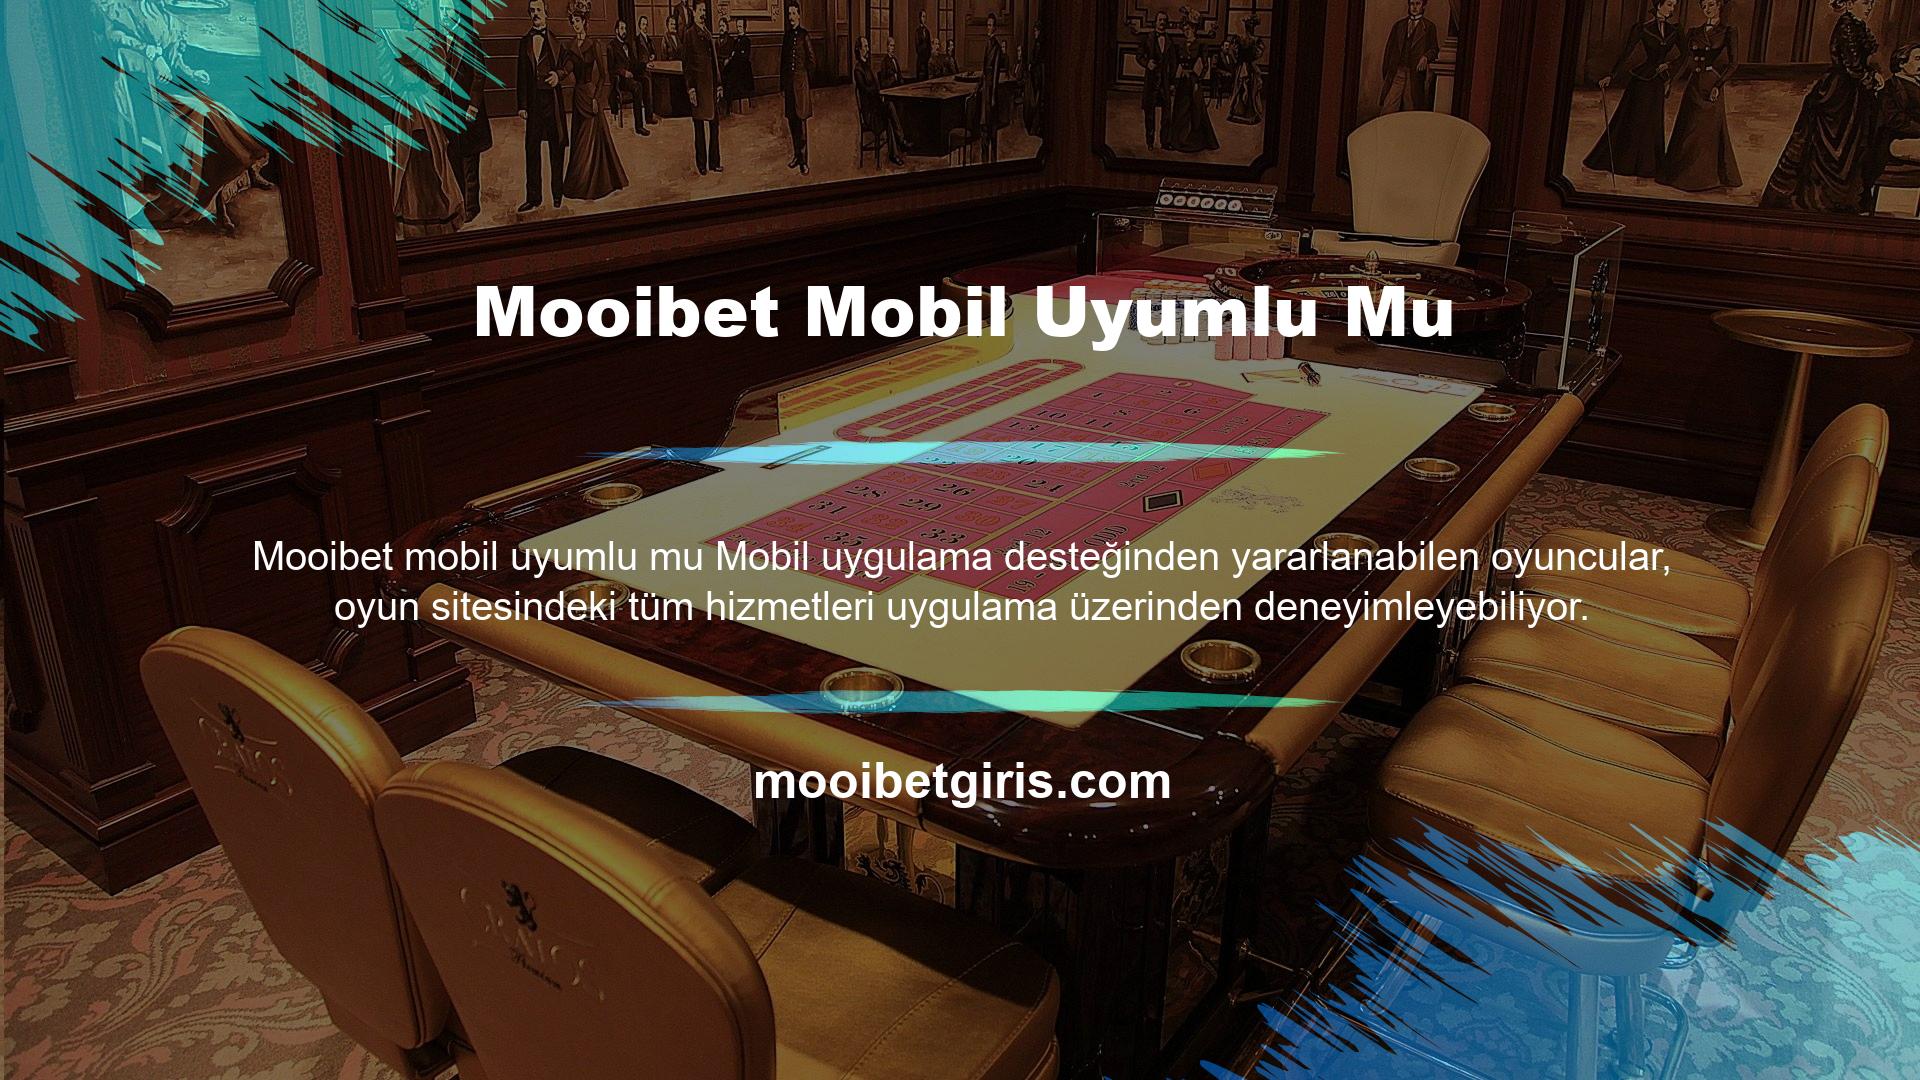 Mooibet mobil uyumlu olup olmadığı sorusu da bahis sitesine girişte sorun yaşayanlar tarafından sorulmuştu